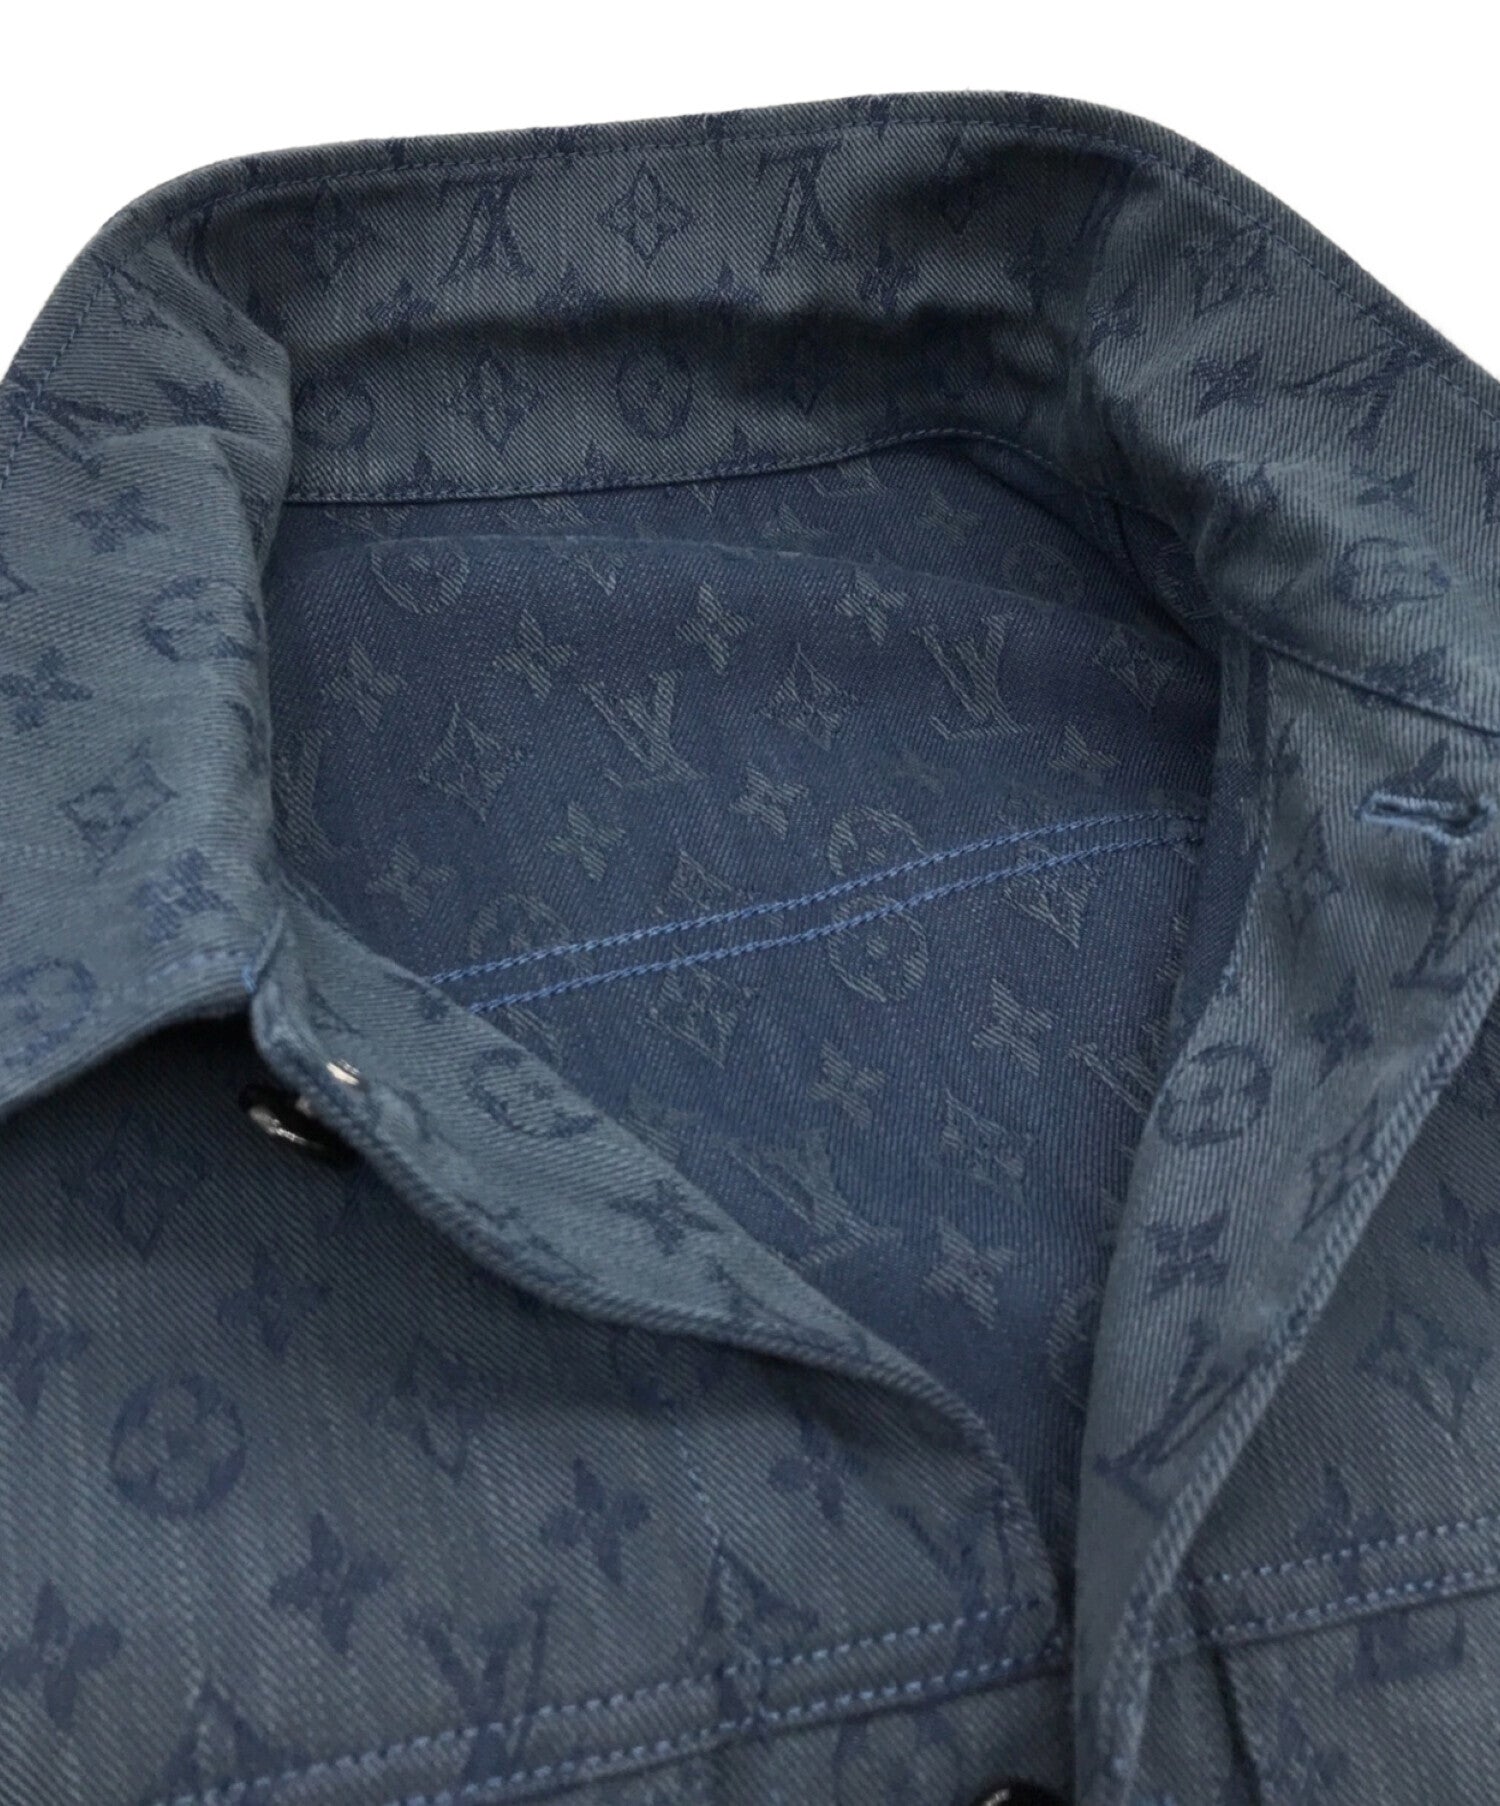 Louis Vuitton Monogram denim work shirt (denim jacket)